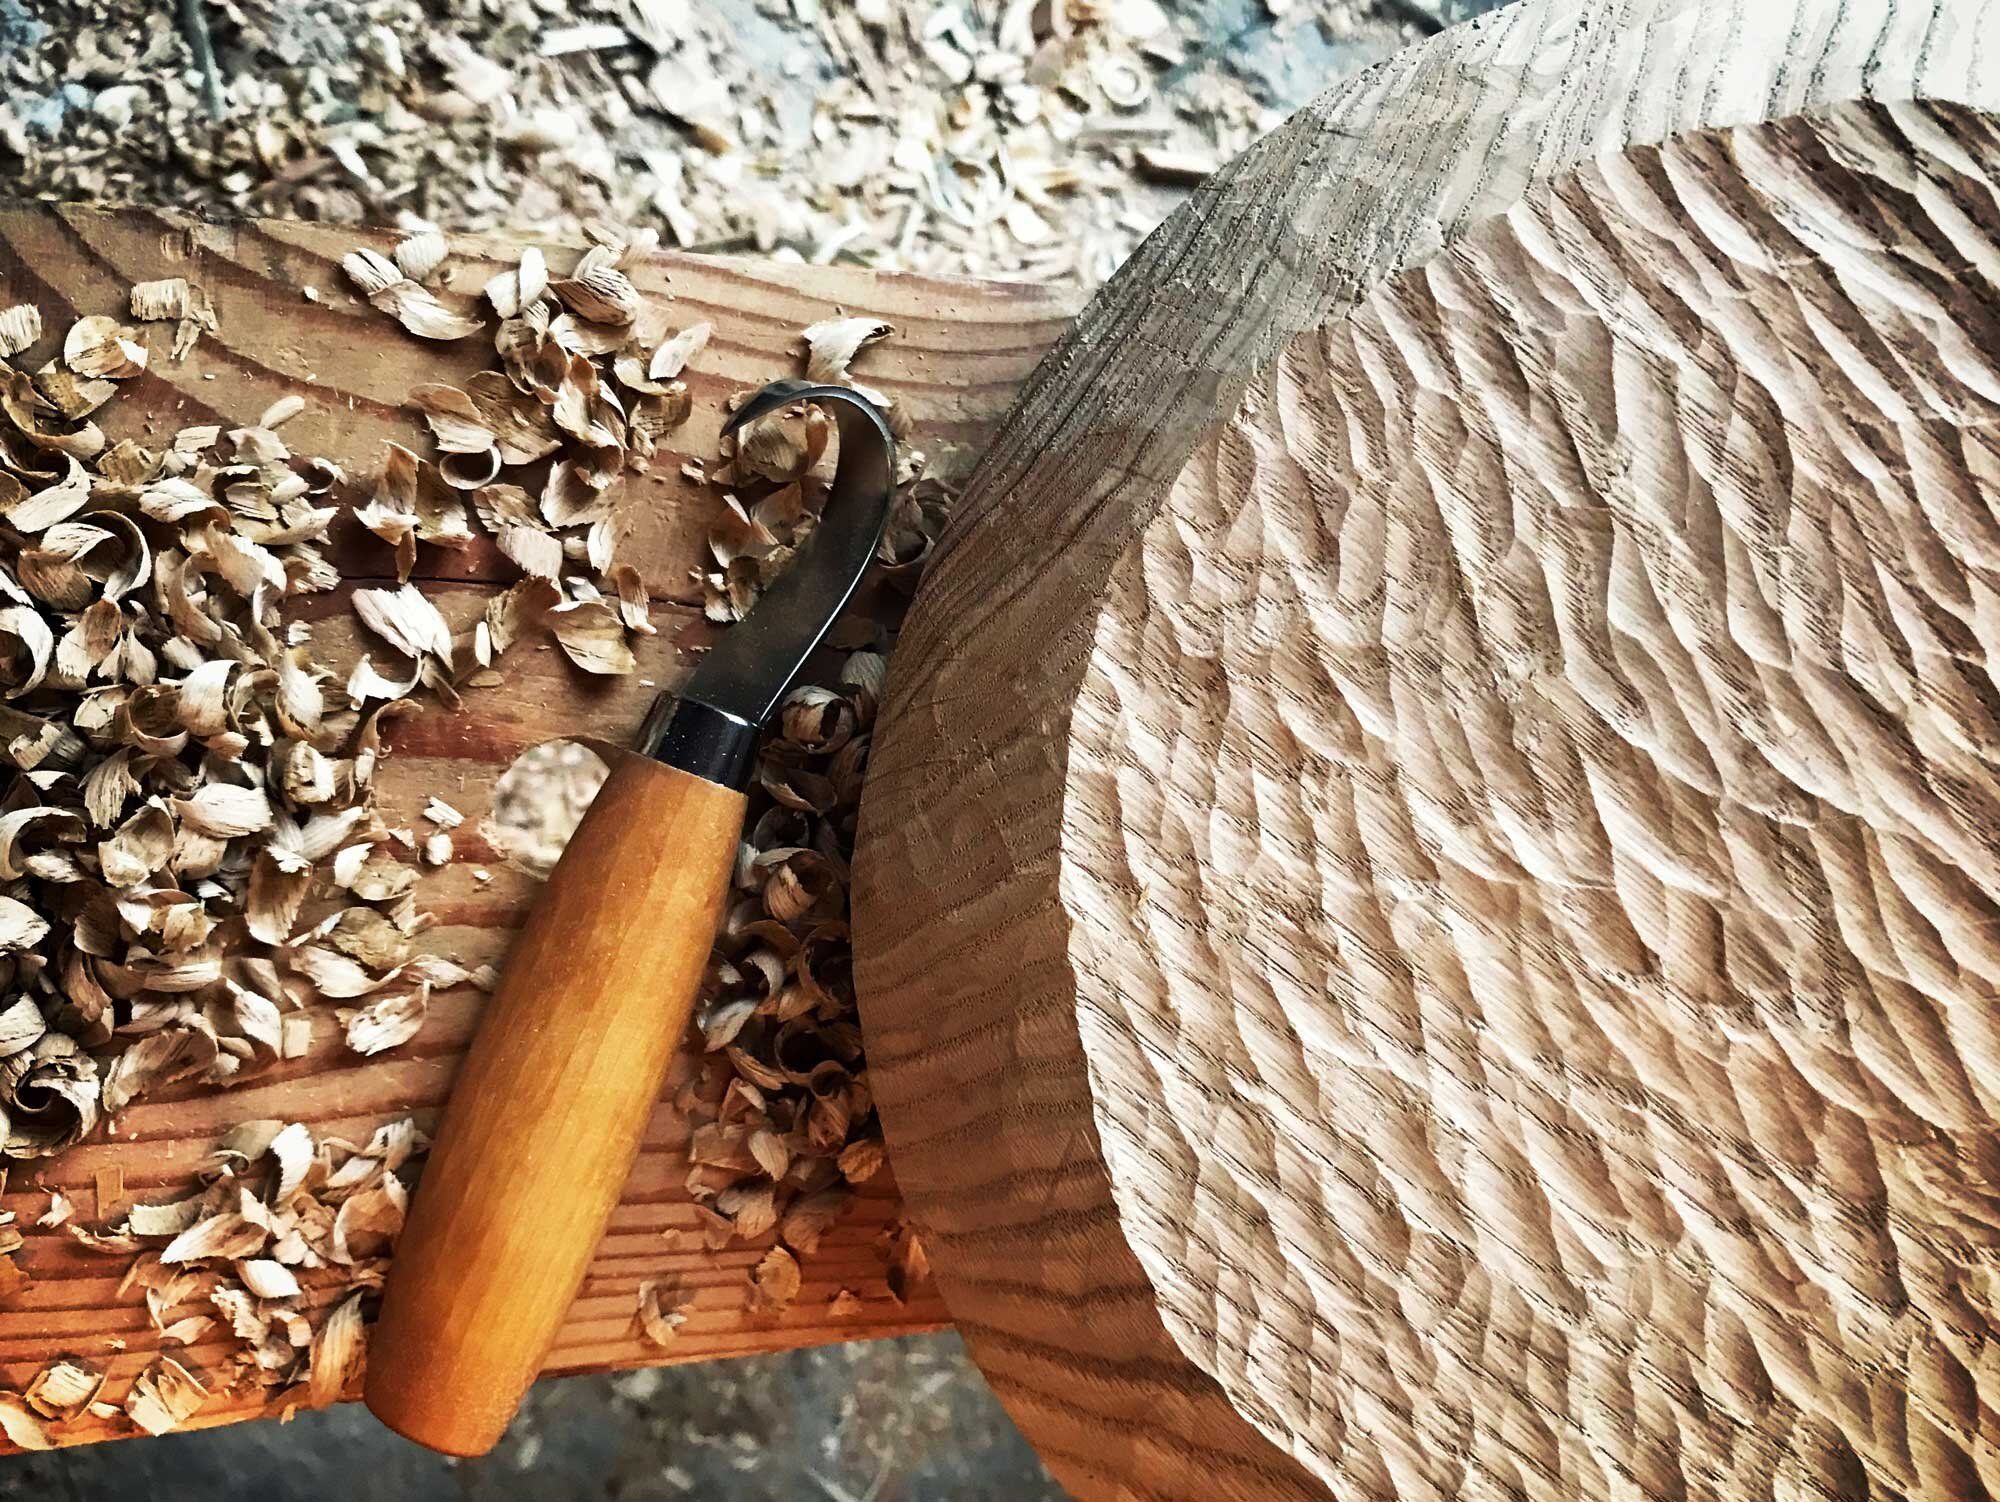 kopeau wood carving kw.jpg